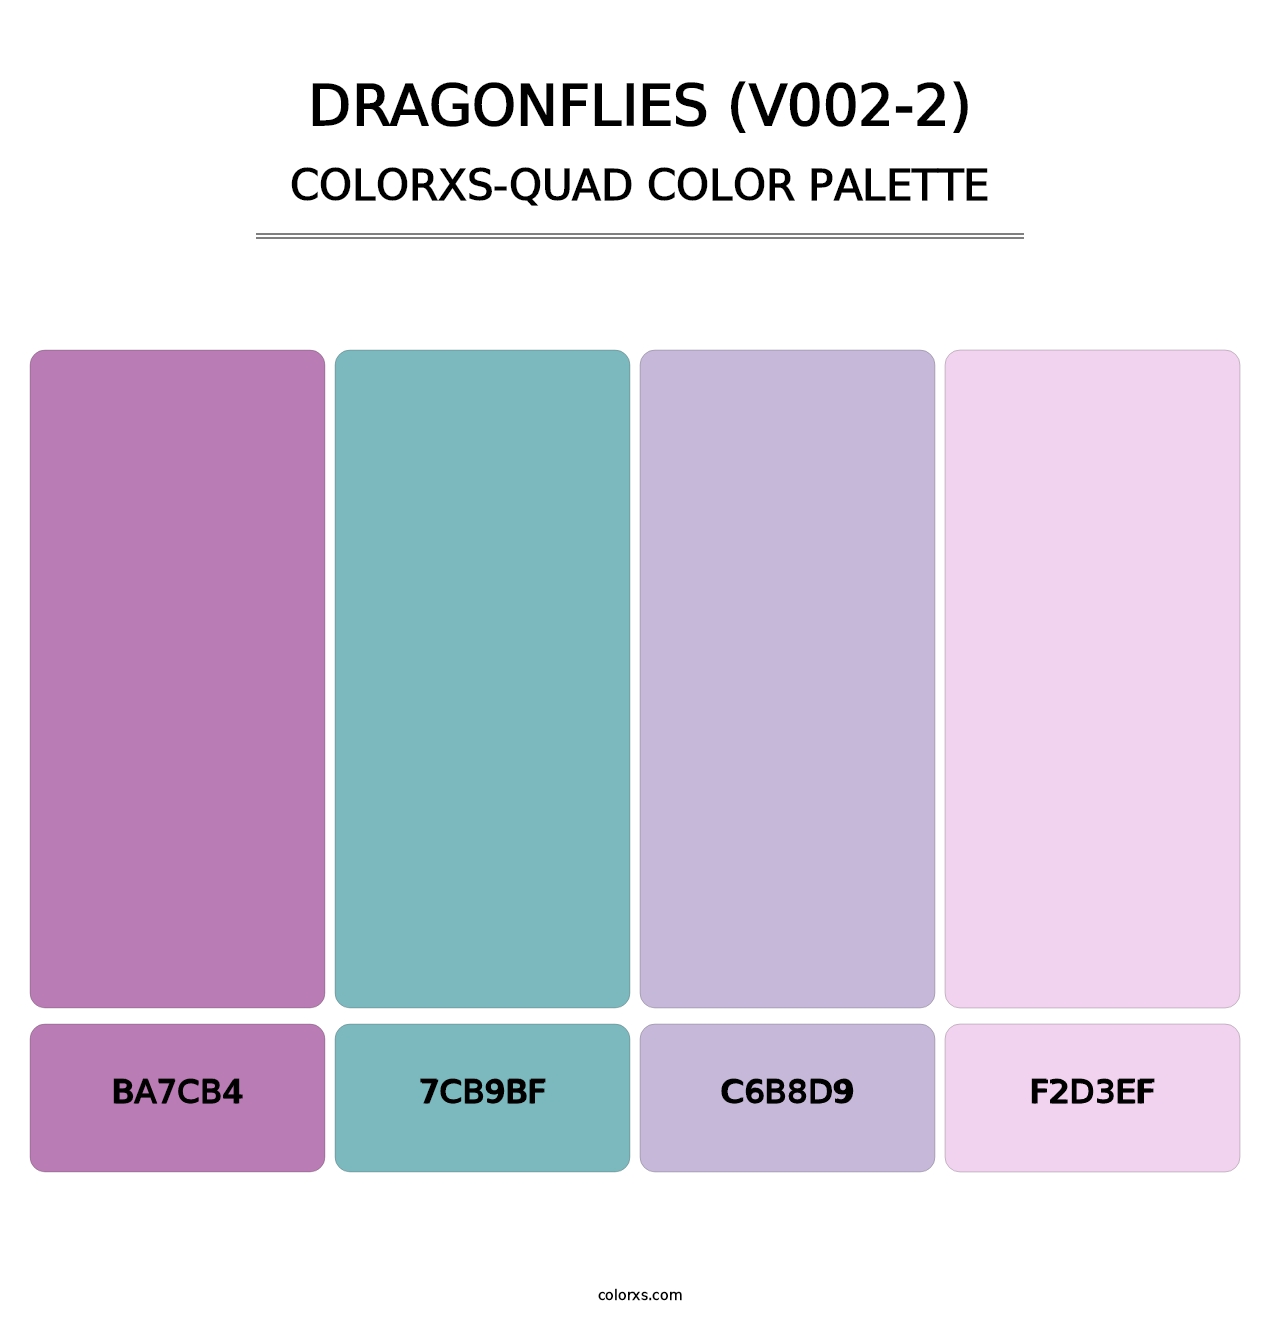 Dragonflies (V002-2) - Colorxs Quad Palette